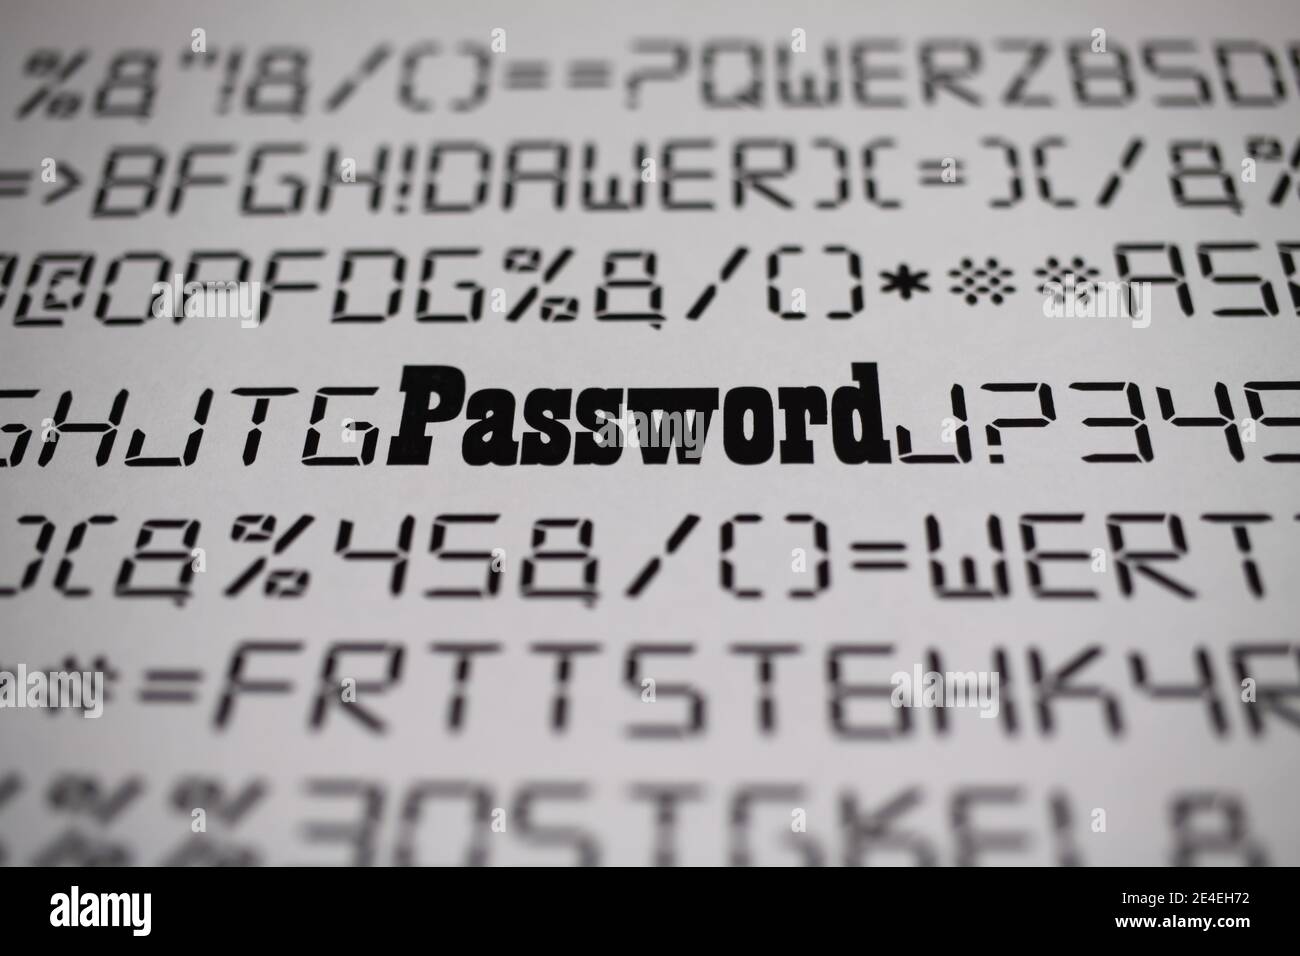 Gros plan de lettres fictives et de caractères spéciaux avec mot de passe flou, fond blanc - complexe de changement de mot de passe concept Banque D'Images